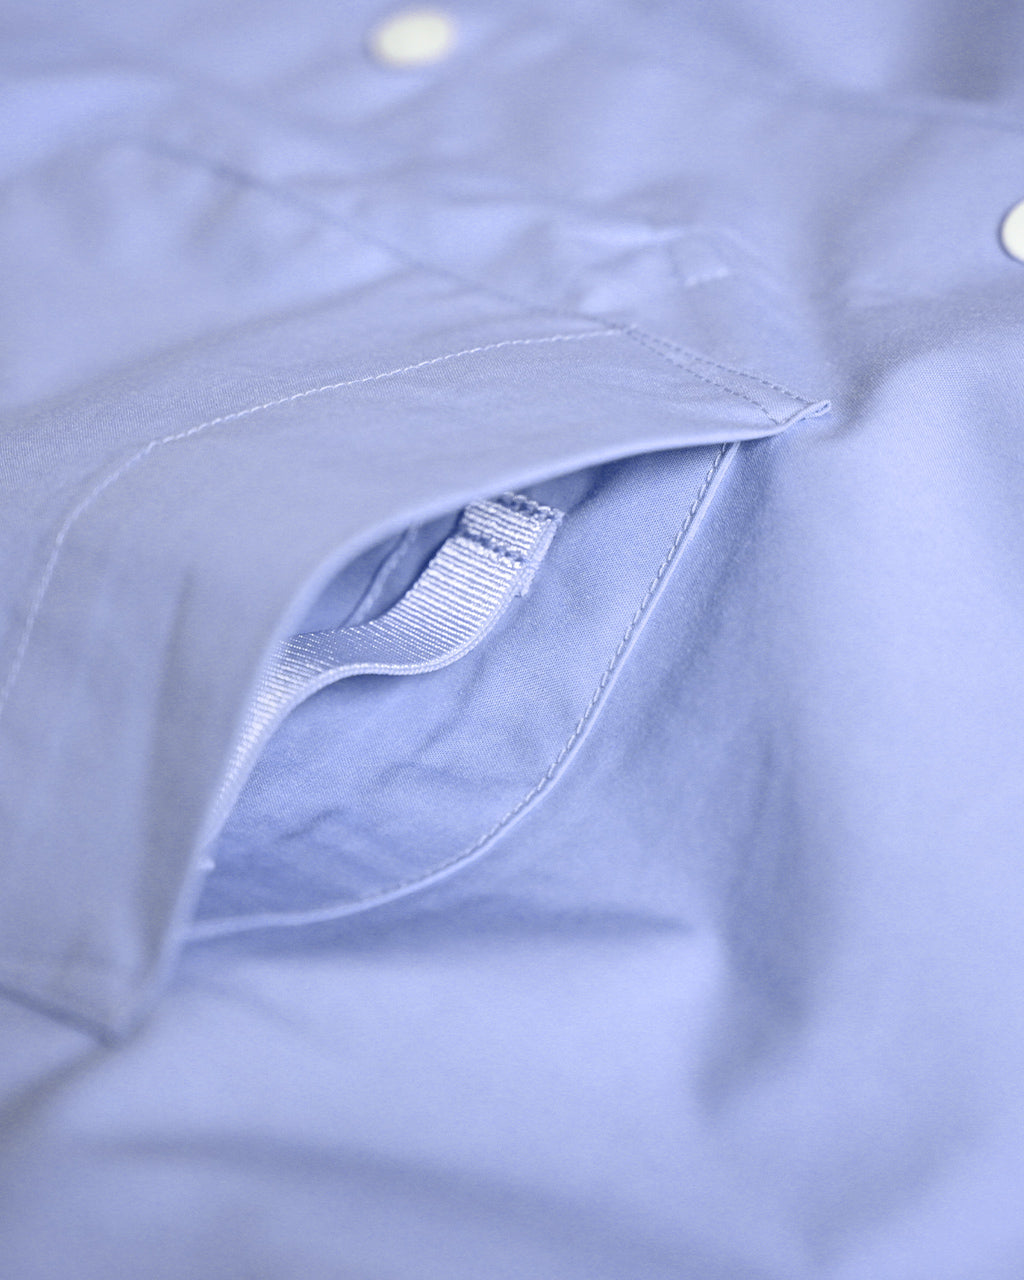 Goldwin ゴールドウィン コンフォータブル シャツ Comfortable Shirt ワイドカラー GL54138【送料無料】